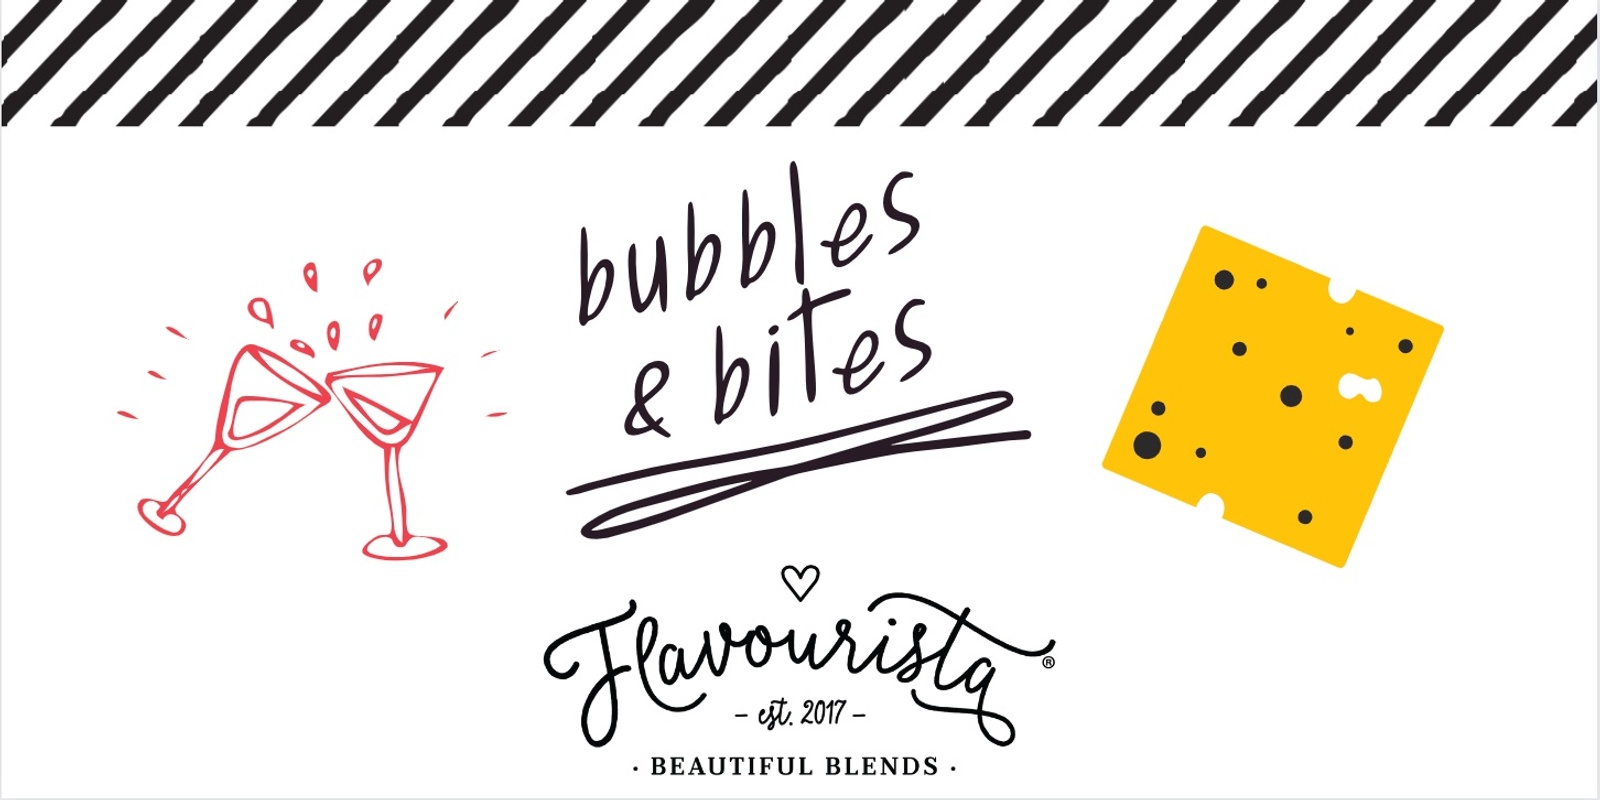 Banner image for Bubbles & Bites Rockhampton